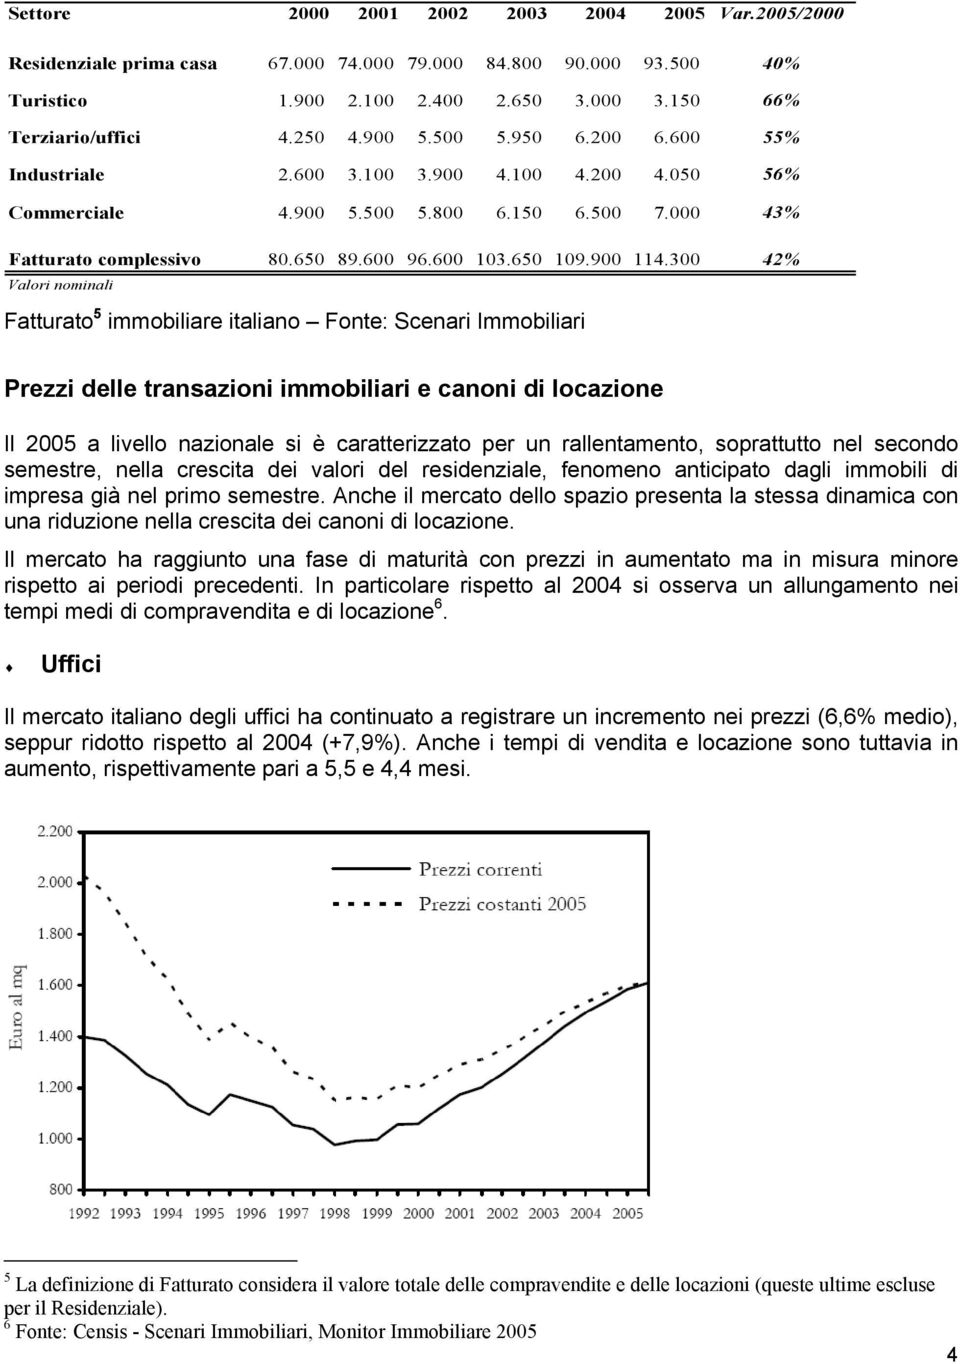 300 42% Valori nominali Fatturato 5 immobiliare italiano Fonte: Scenari Immobiliari Prezzi delle transazioni immobiliari e canoni di locazione Il 2005 a livello nazionale si è caratterizzato per un